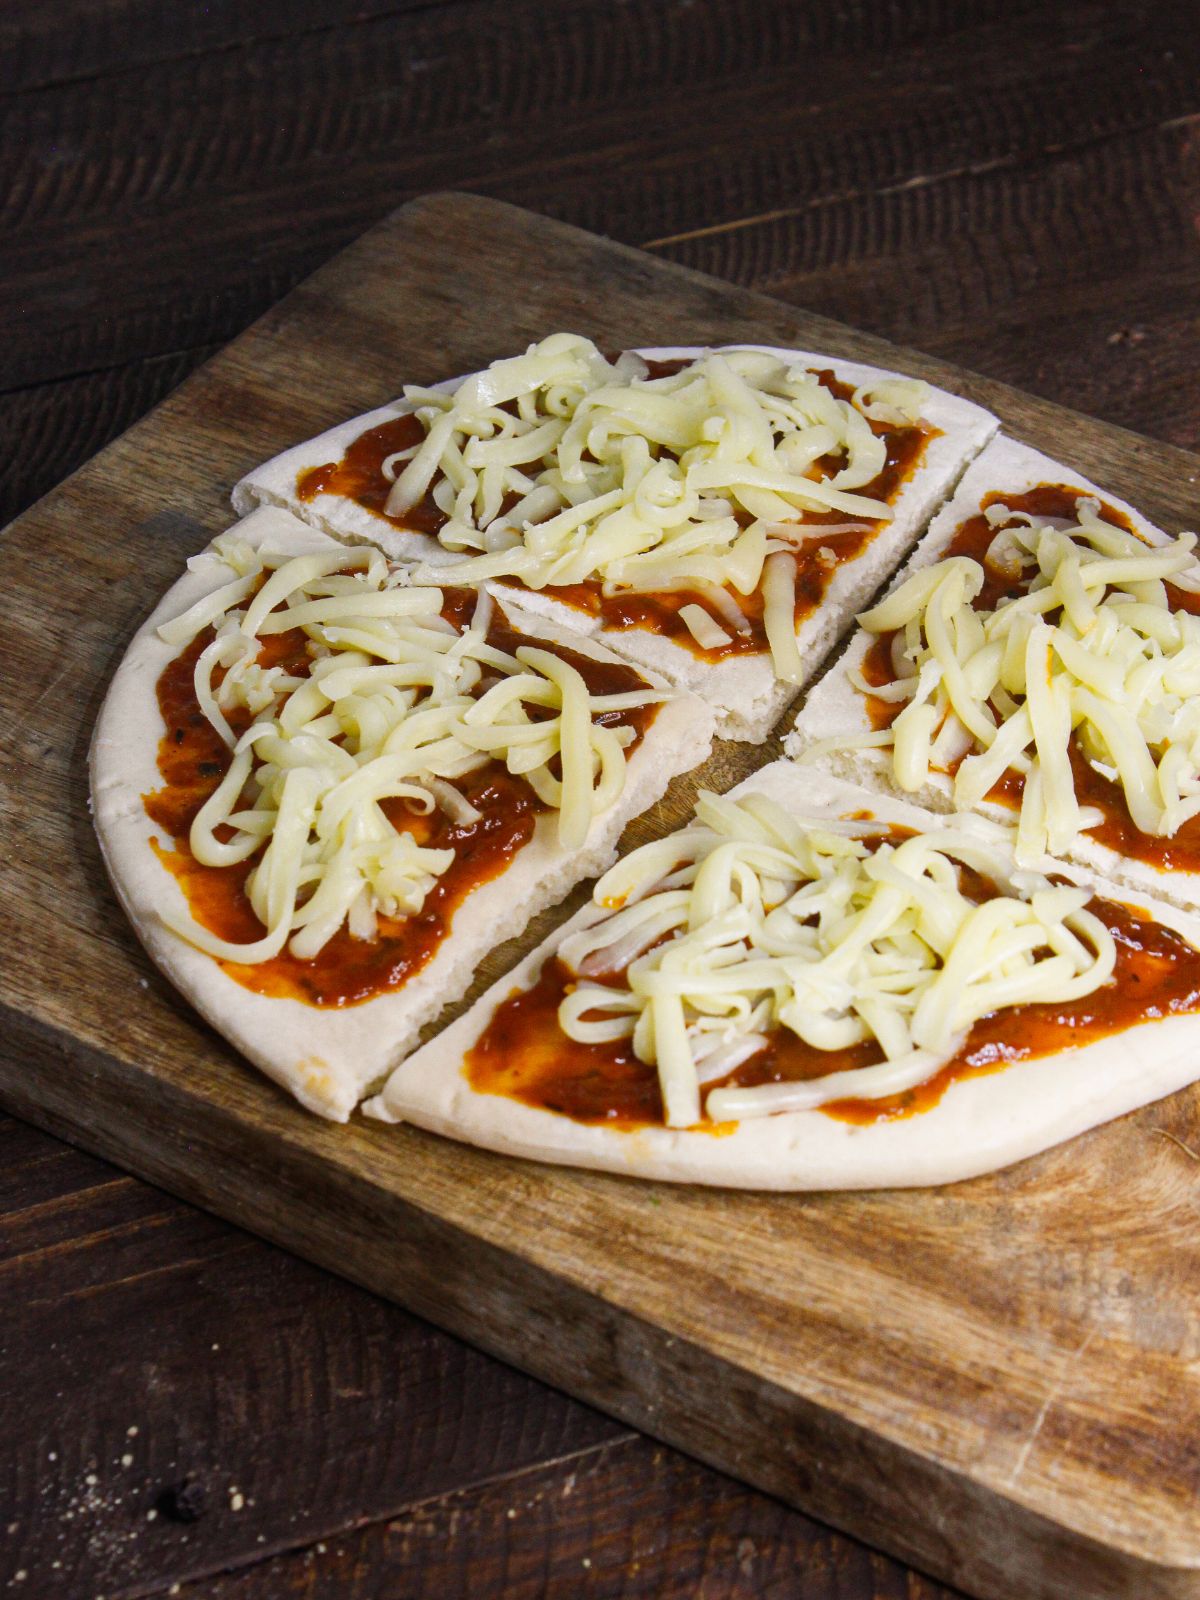 Add mozzarella cheese over the pizza sauce layer